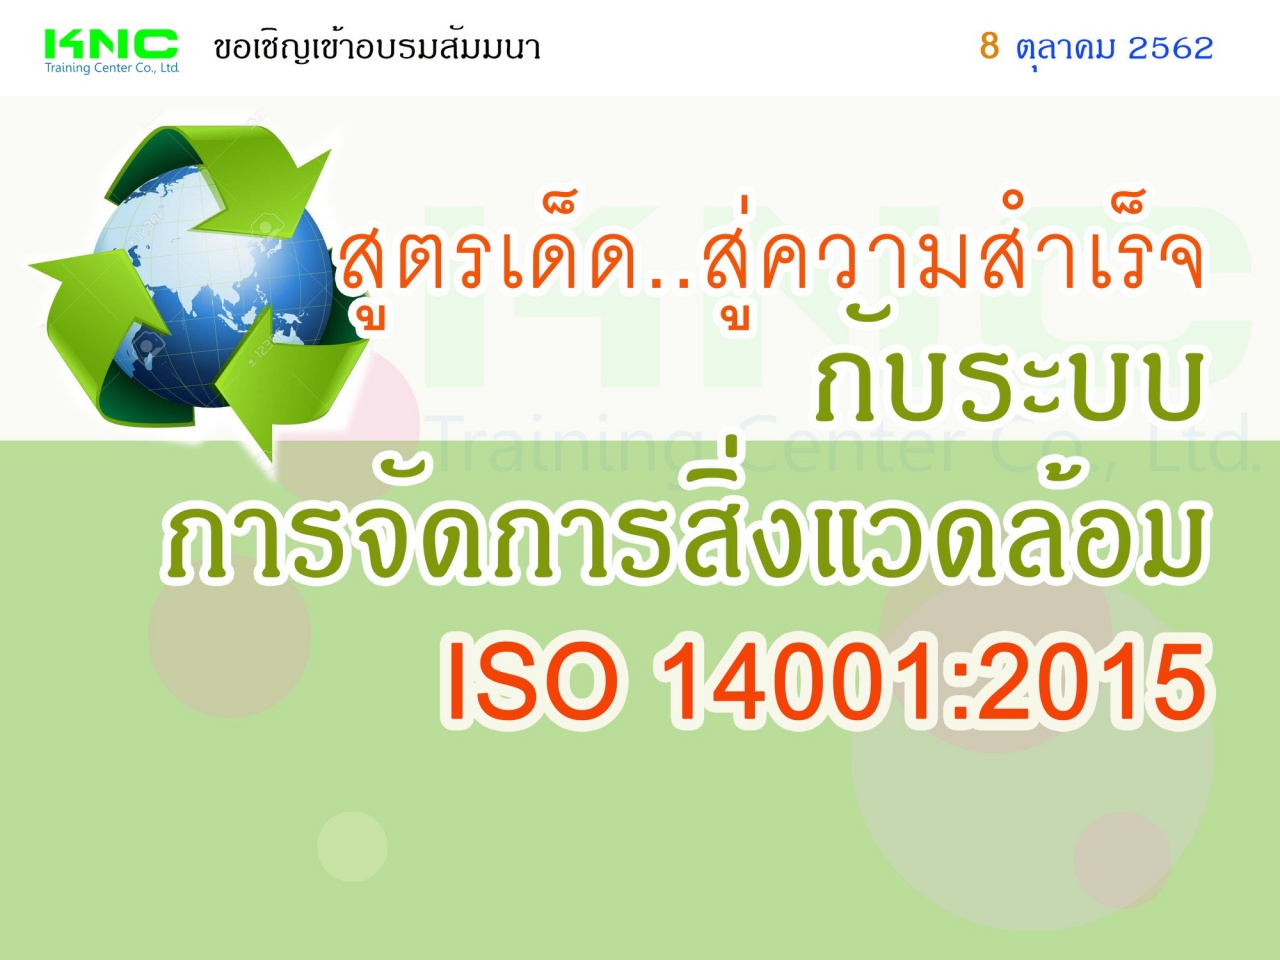 สูตรเด็ด..สู่ความสำเร็จกับระบบการจัดการสิ่งแวดล้อม  ISO 14001:2015